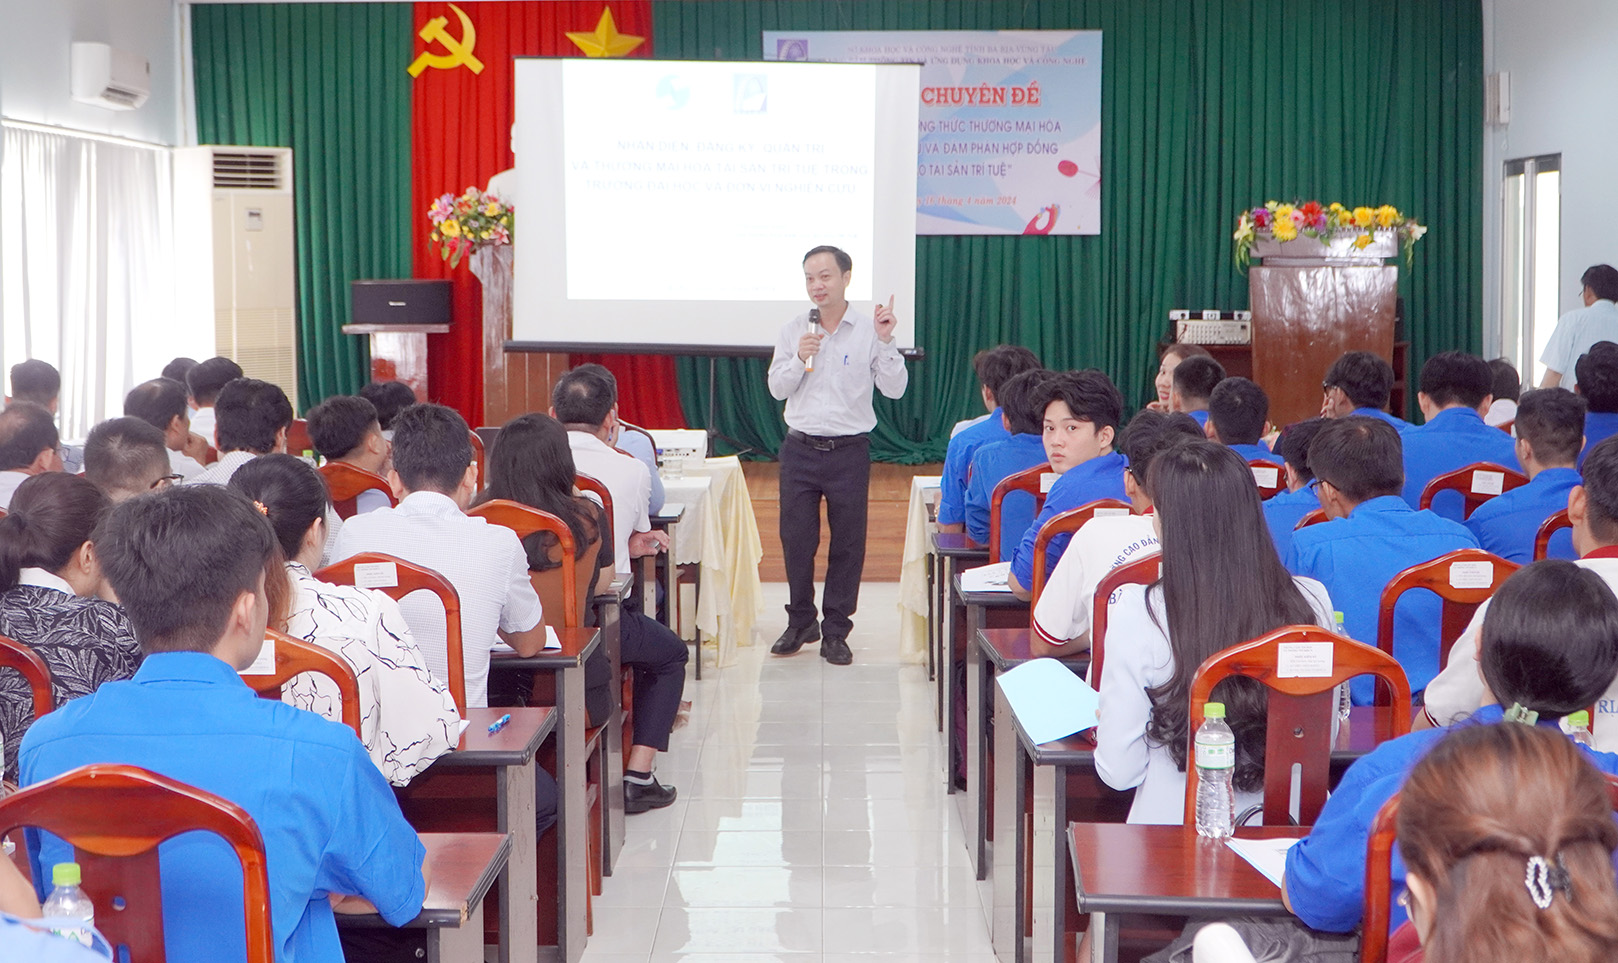 Ông Trần Giang Khuê, Trưởng Văn phòng phía Nam, Cục Sở hữu trí tuệ trình bày các nội dung  về sở hữu trí tuệ.